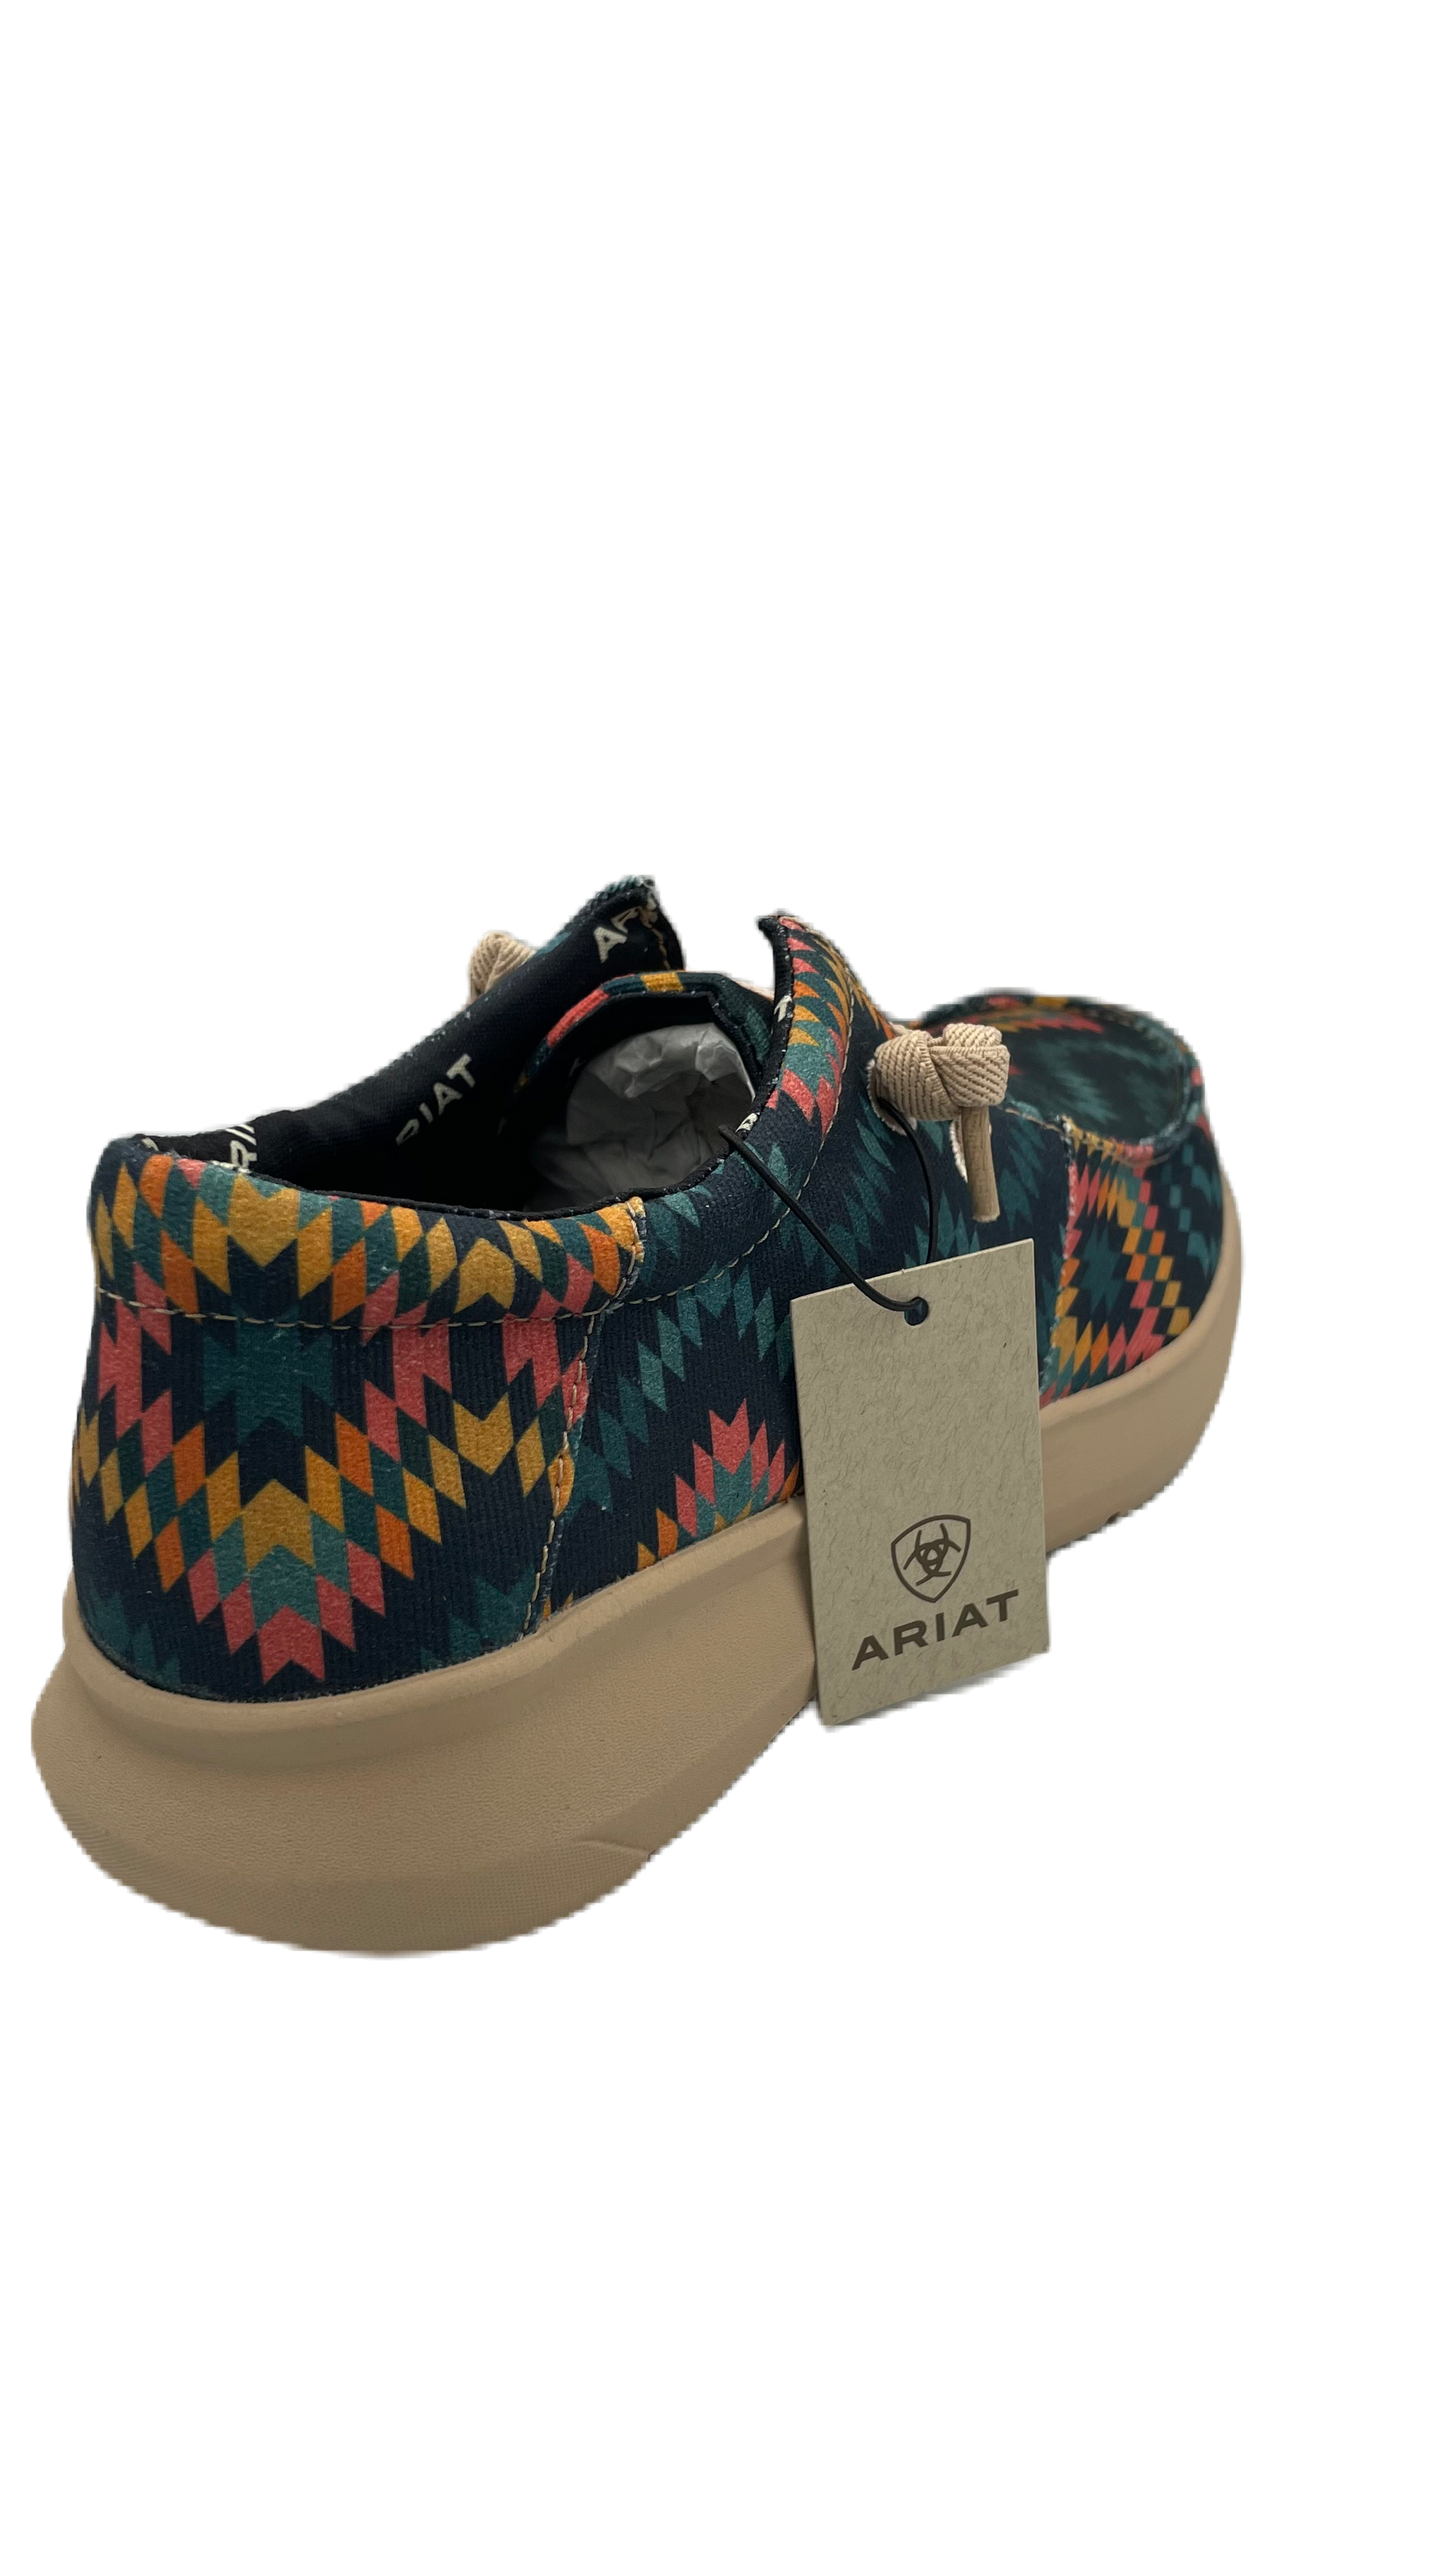 Zapato Ariat chimayo caballero con diseño azteca en colores